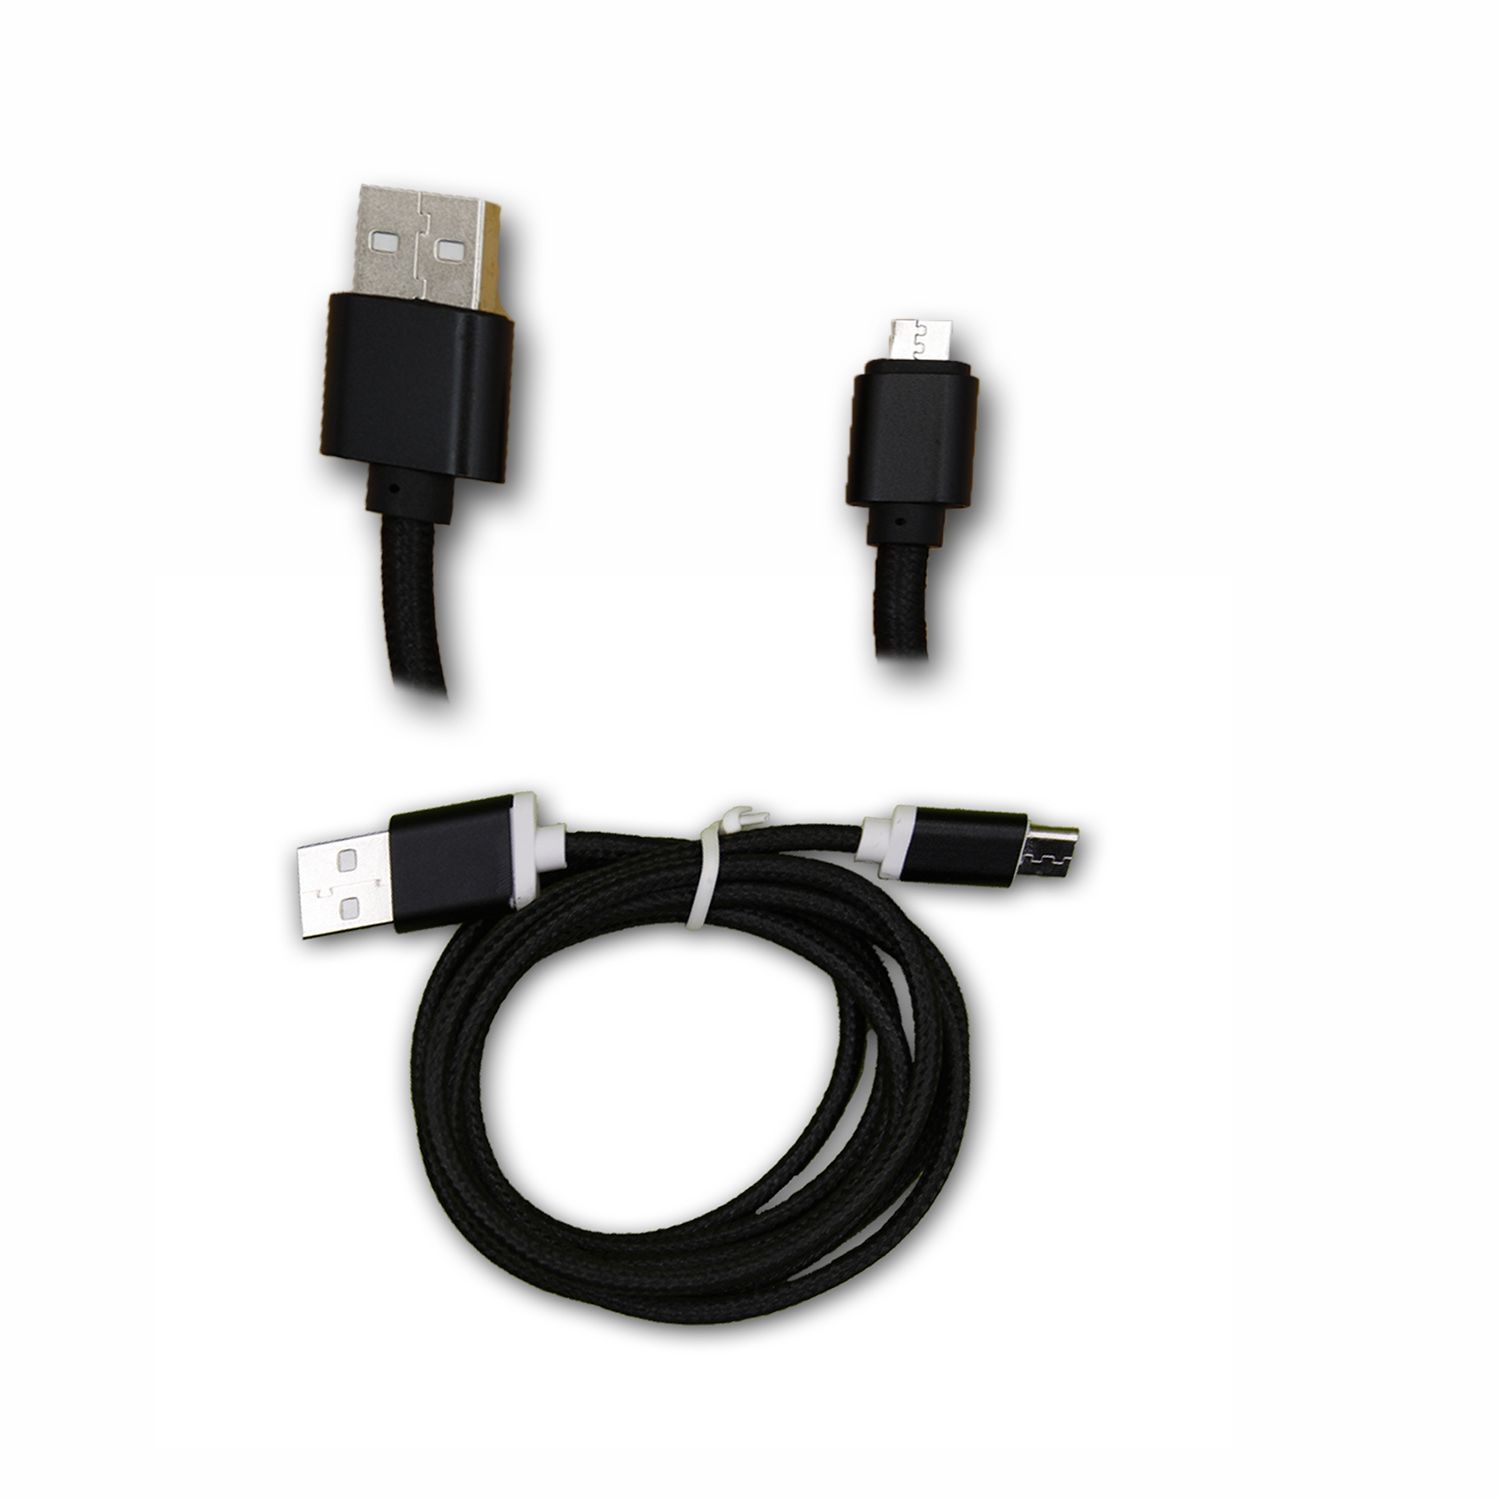 Essentiel B Smart Teen Câble Data NOIR 1M en nylon tressé ultra Résistant (garantie 12 mois) Micro USB pour charge, synchronisation et transfert de données by PH26 ®